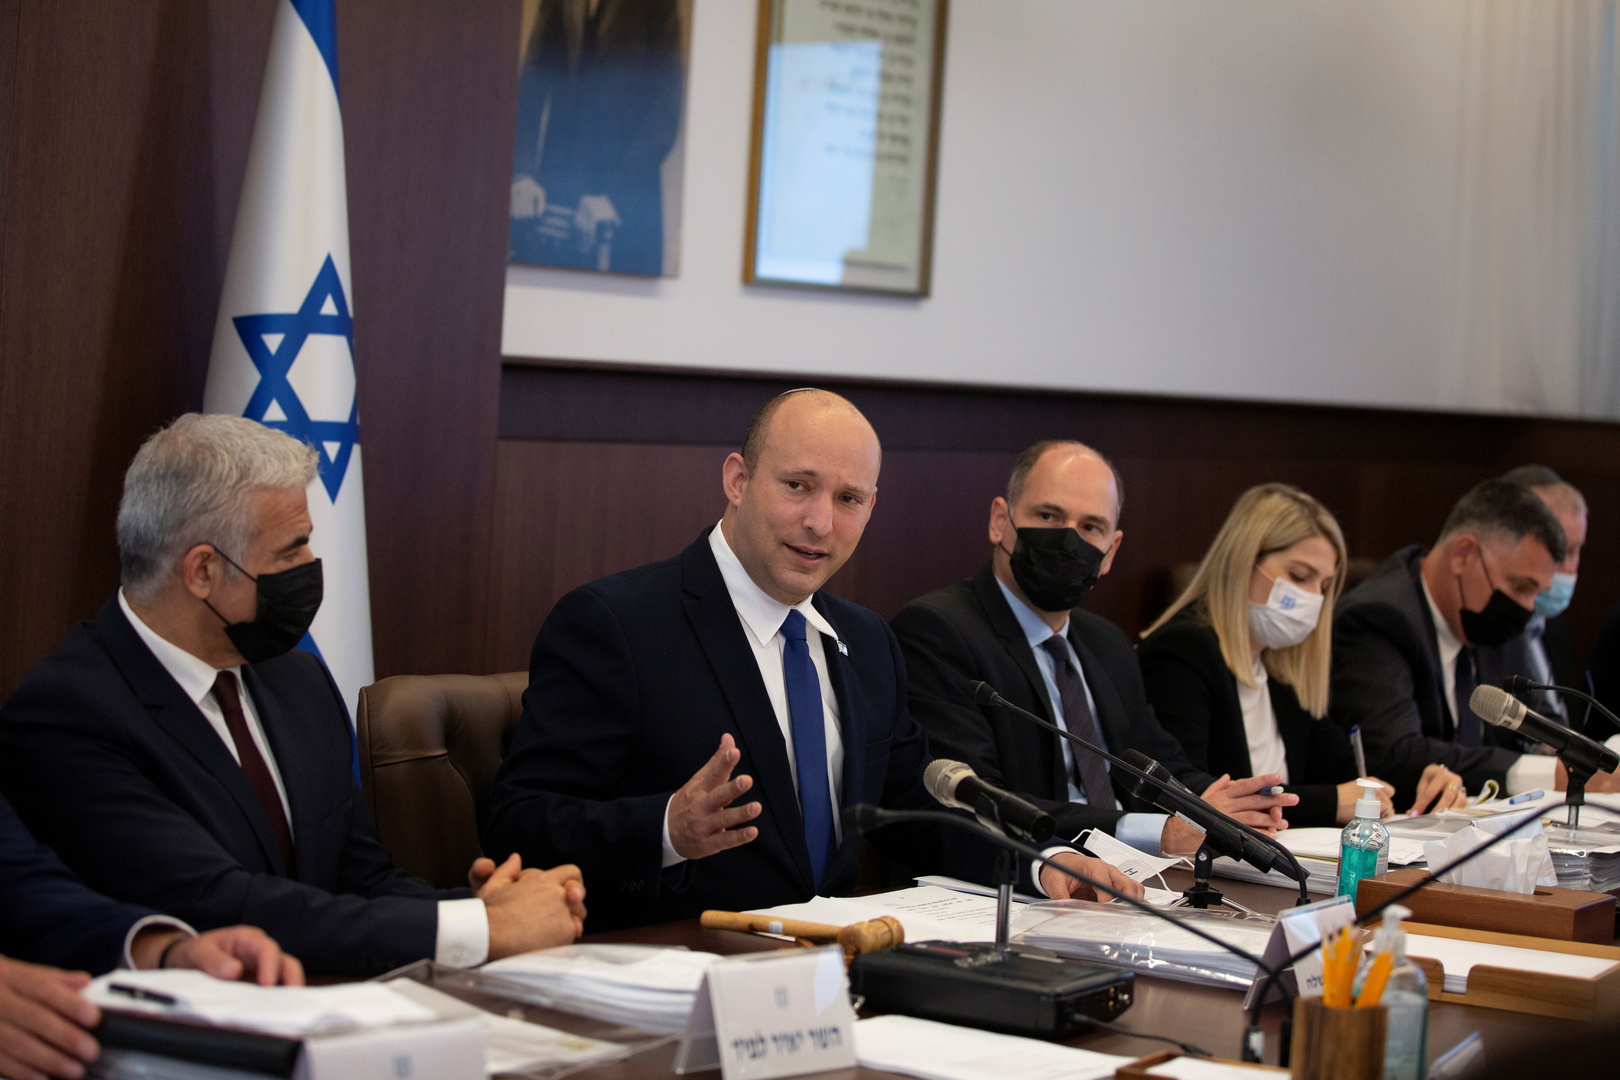 تقارير: تشديد الحماية لوزراء بالحكومة الإسرائيلية بعد تهديدات بالقتل